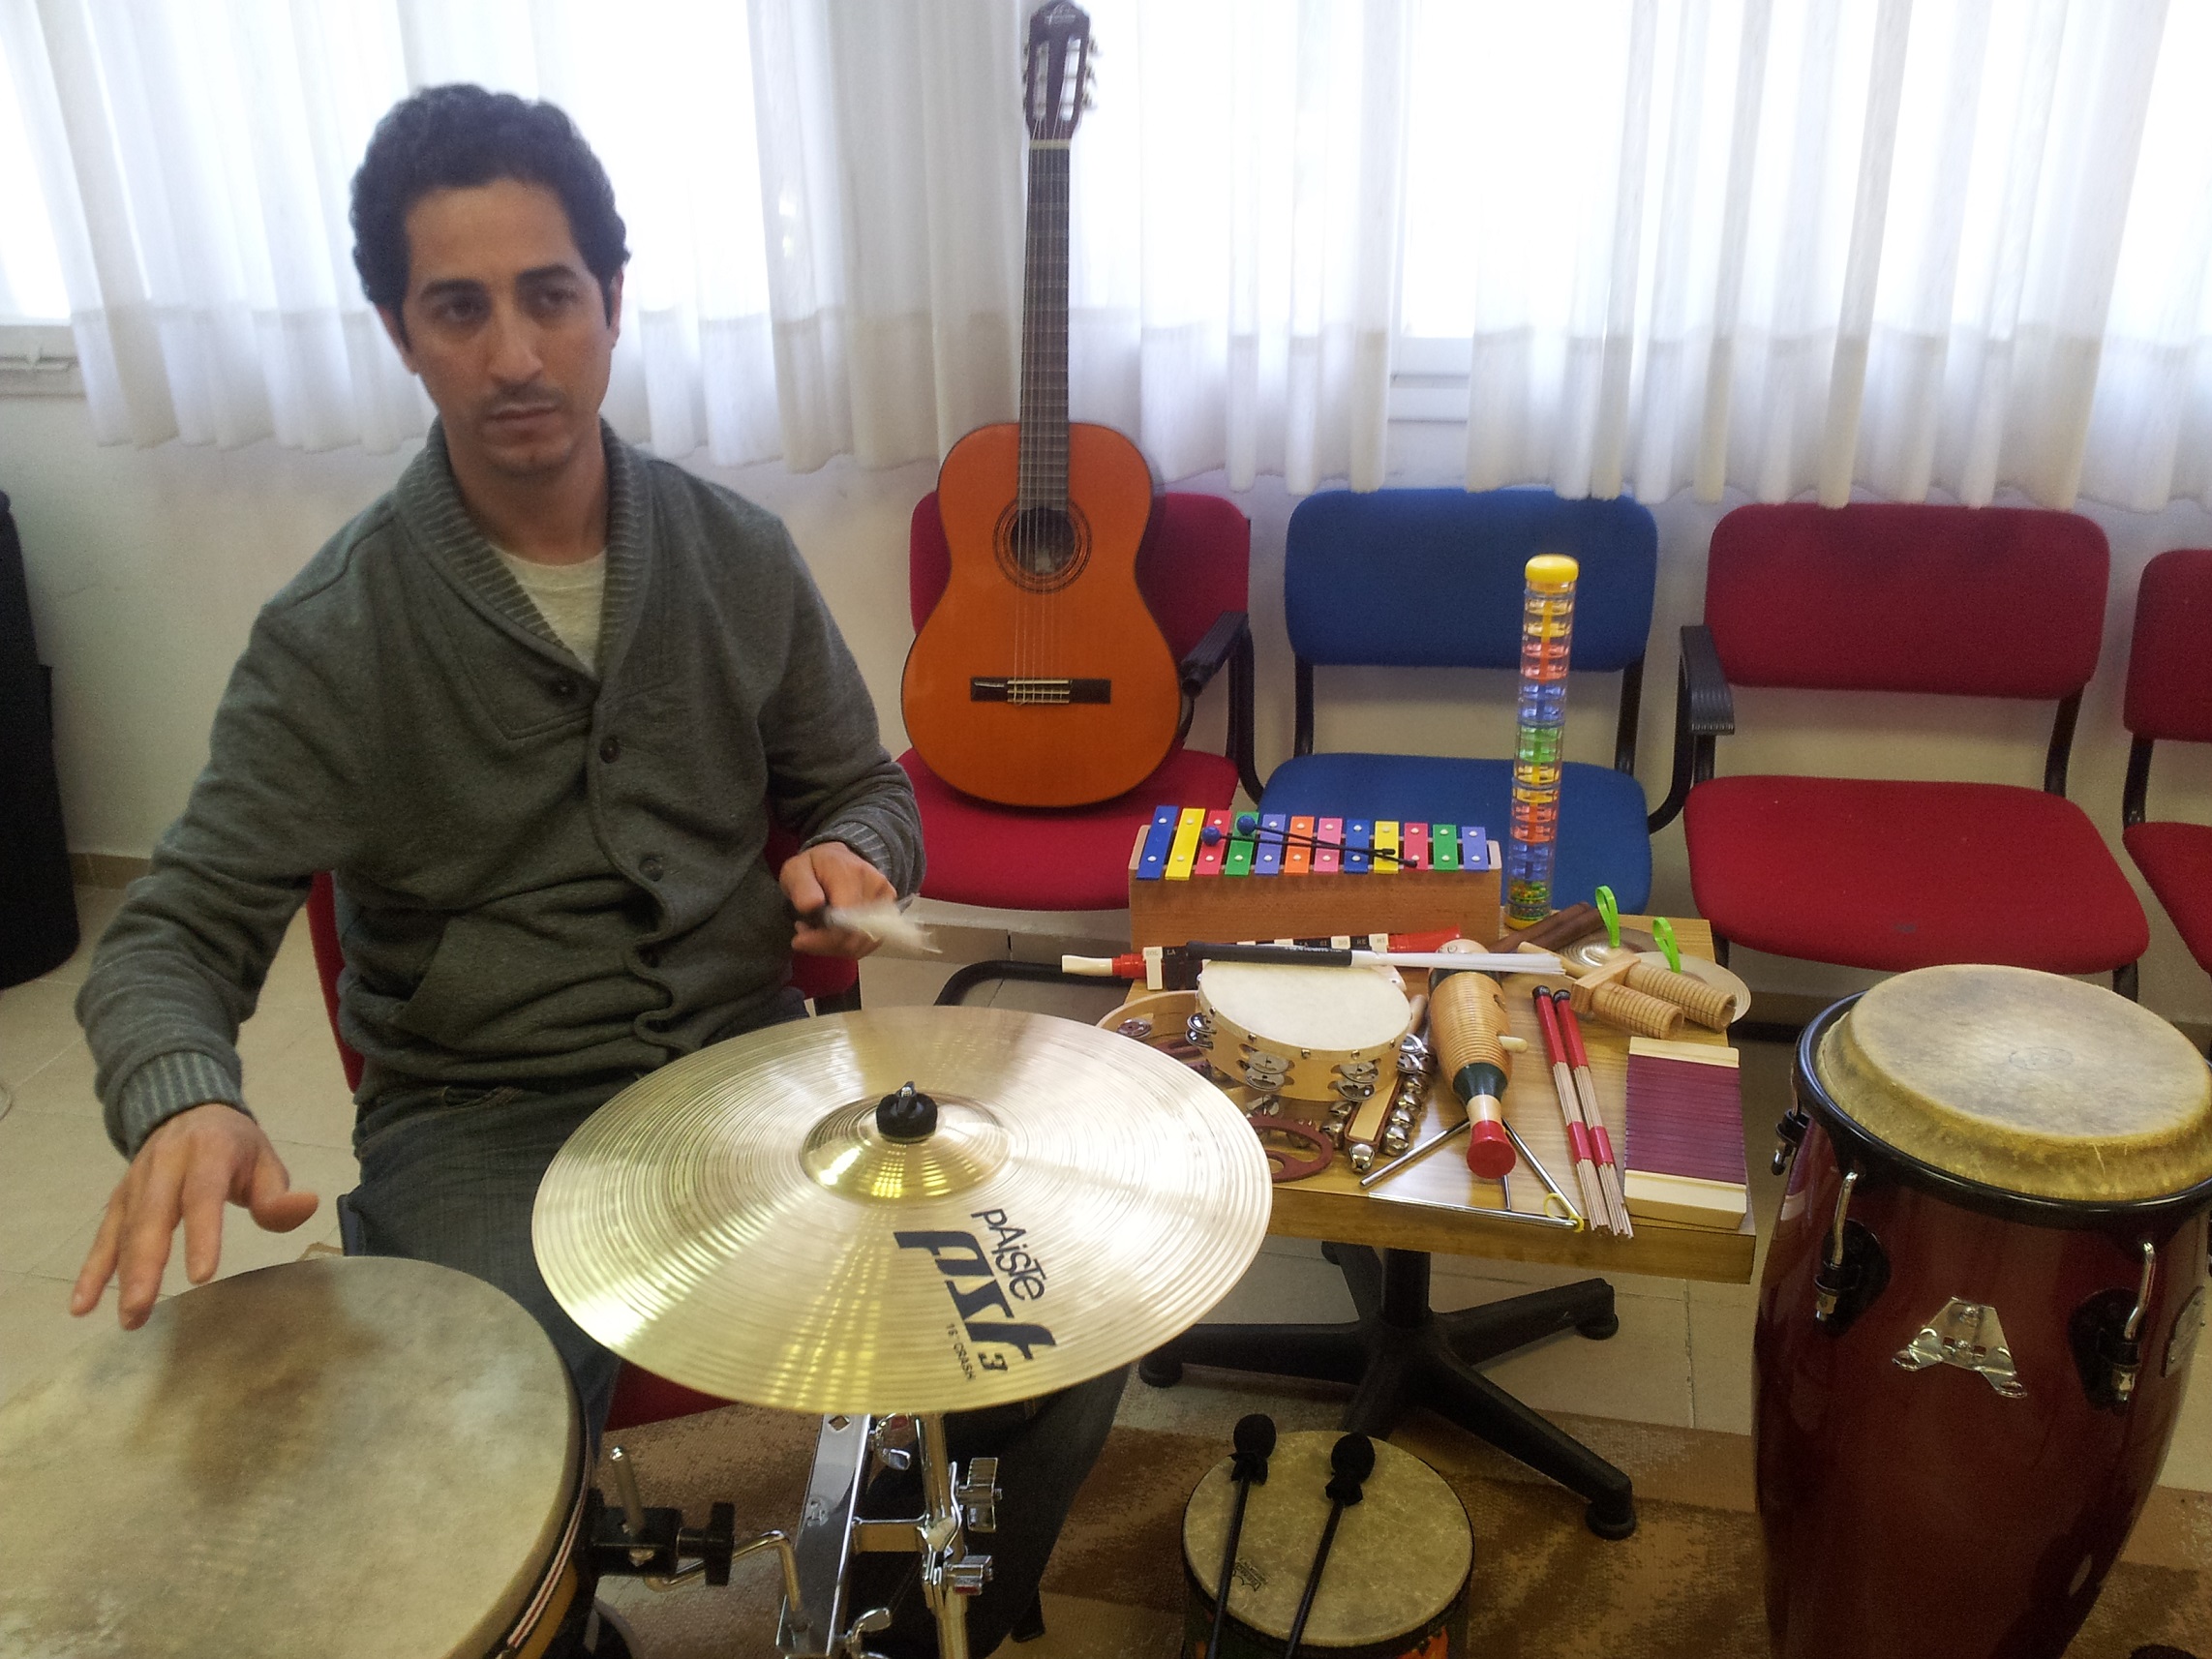 נזאר קבאני מטפל במוסיקה :צילם גל דומני (הגדל)